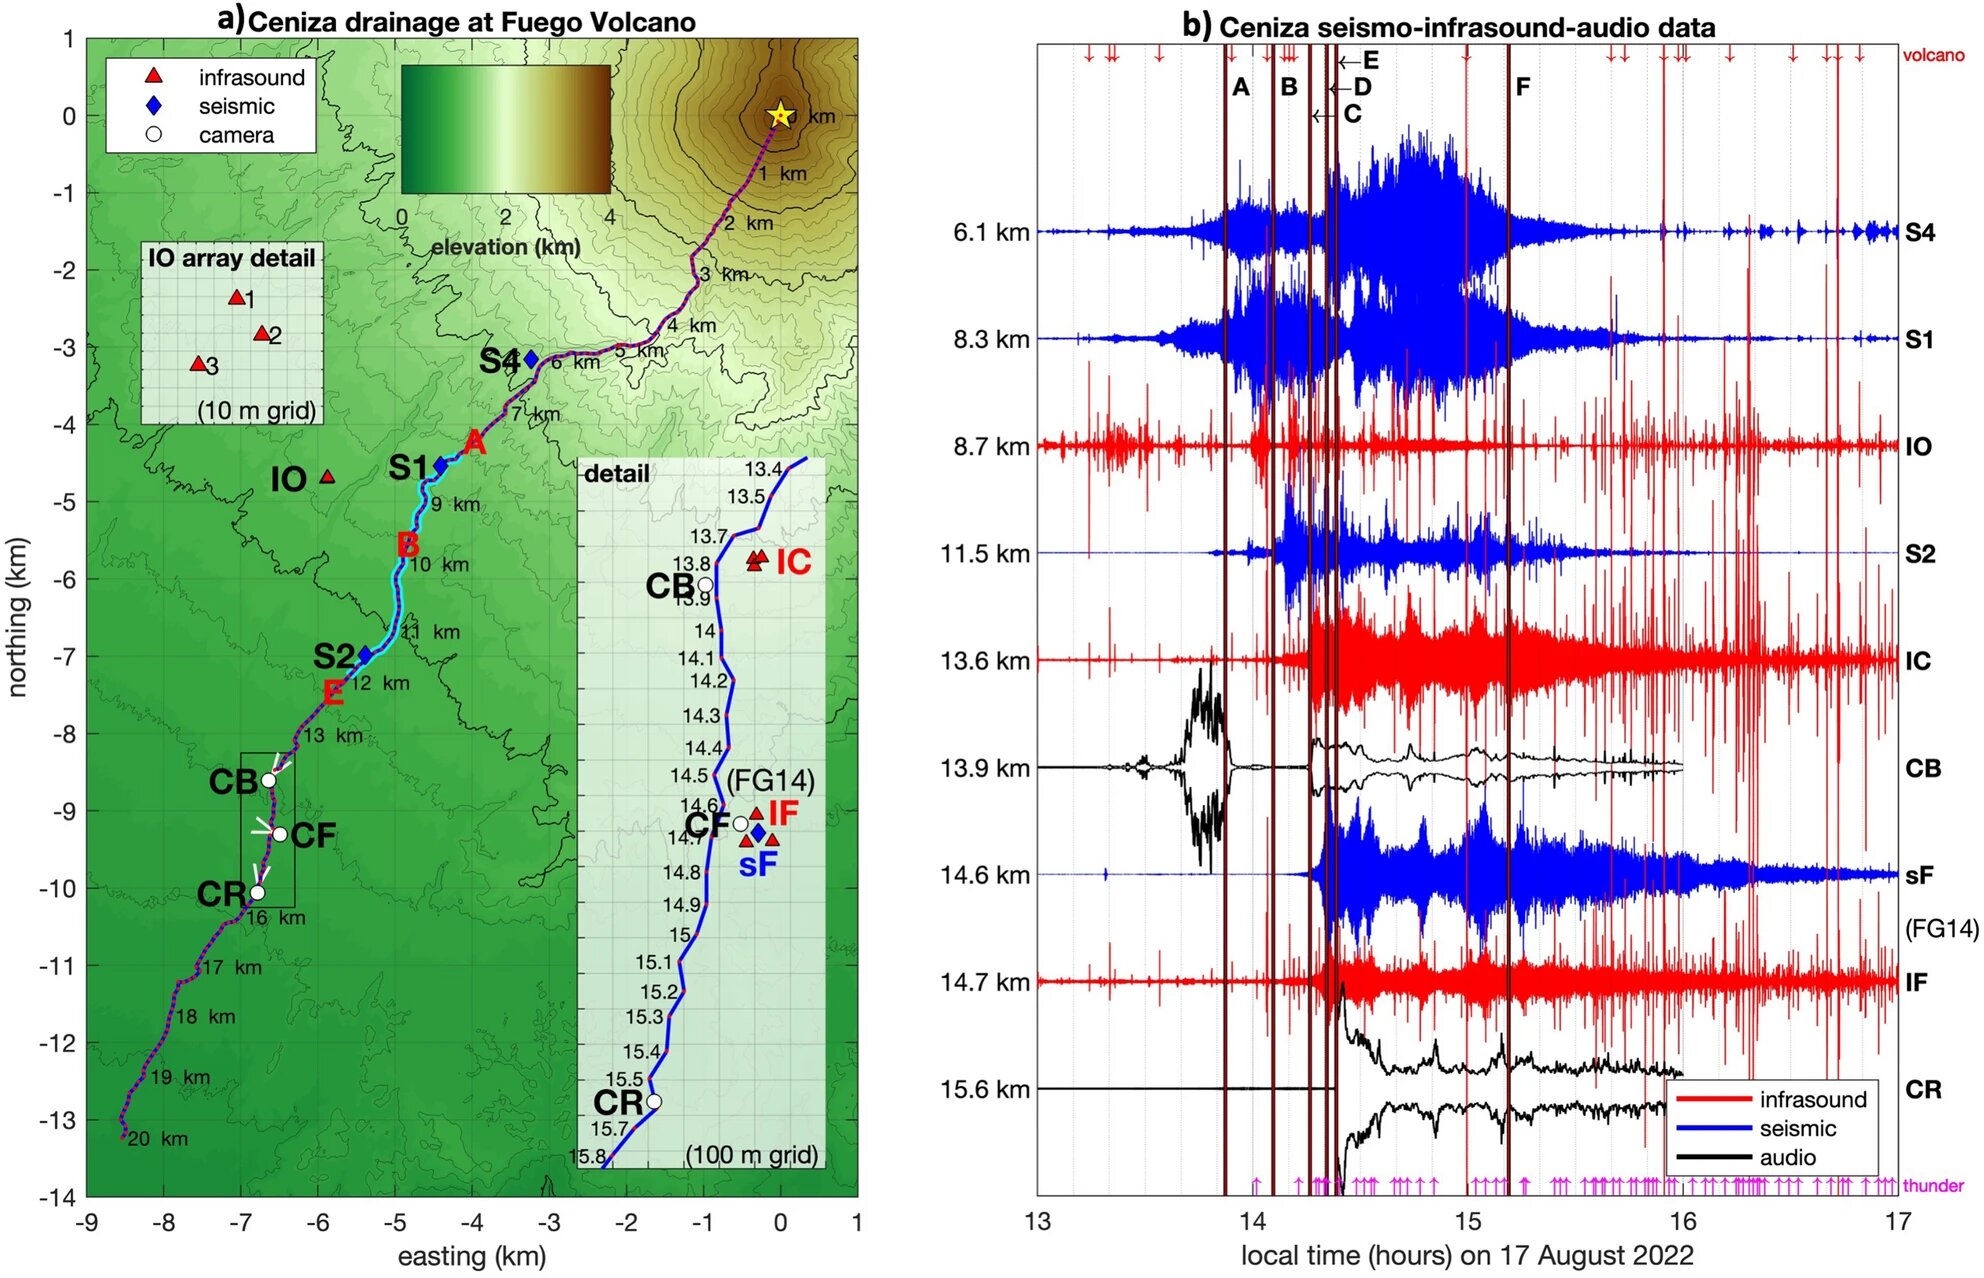 Nuevo estudio detecta sonidos inaudibles de flujos de lodo volcánico